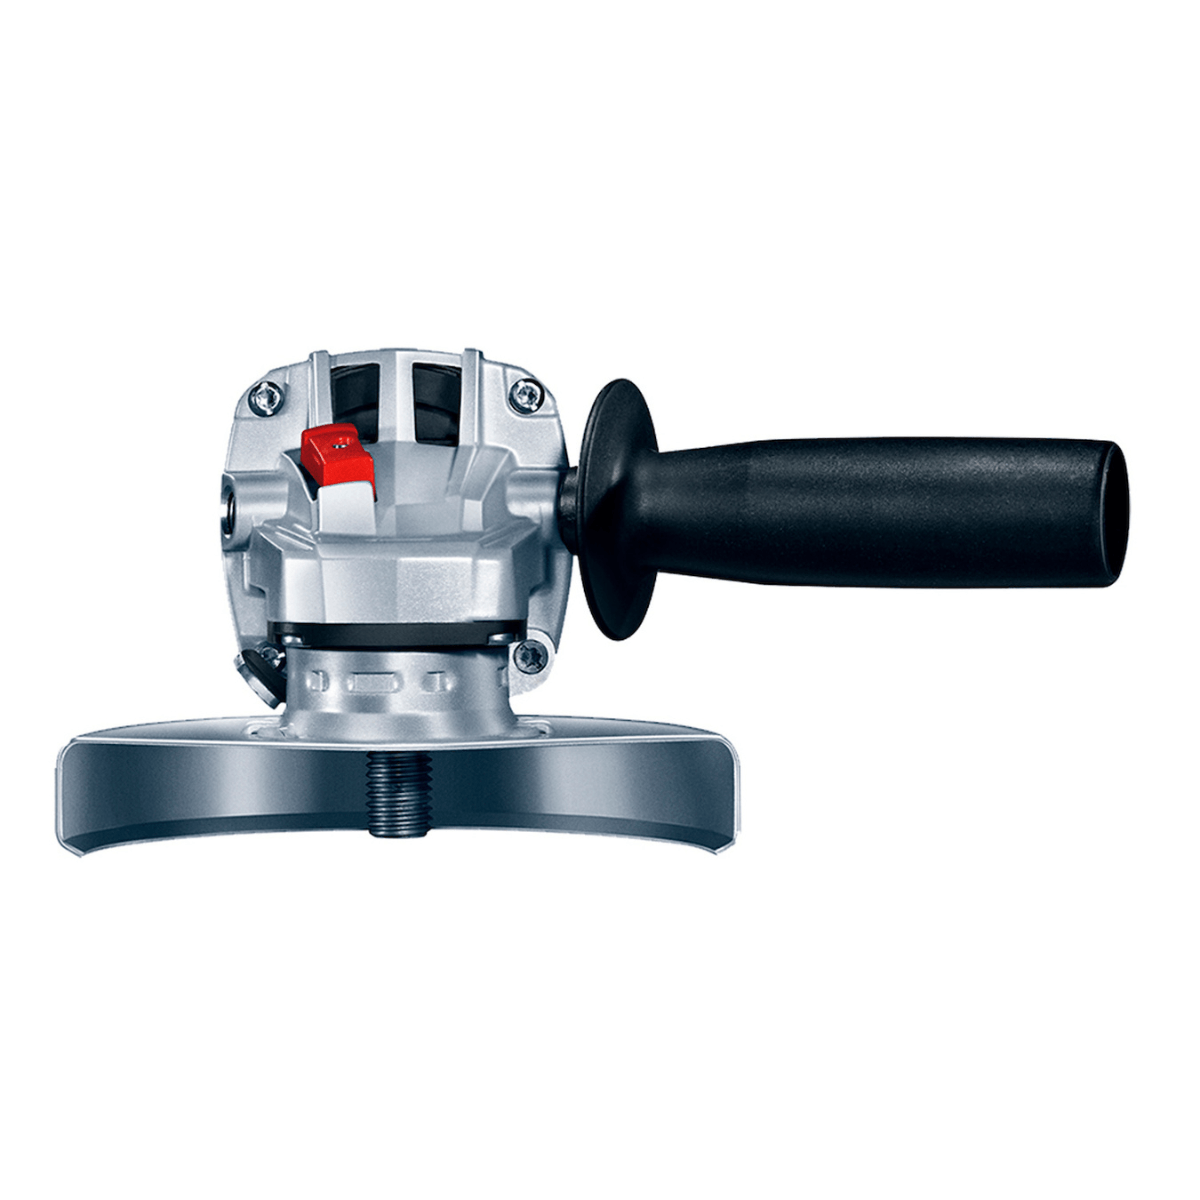 Bosch - GWS 9-125 S - Amoladora angular, 900 W, 125 mm, Velocidad  ajustable,  - Tienda online de herramientas eléctricas